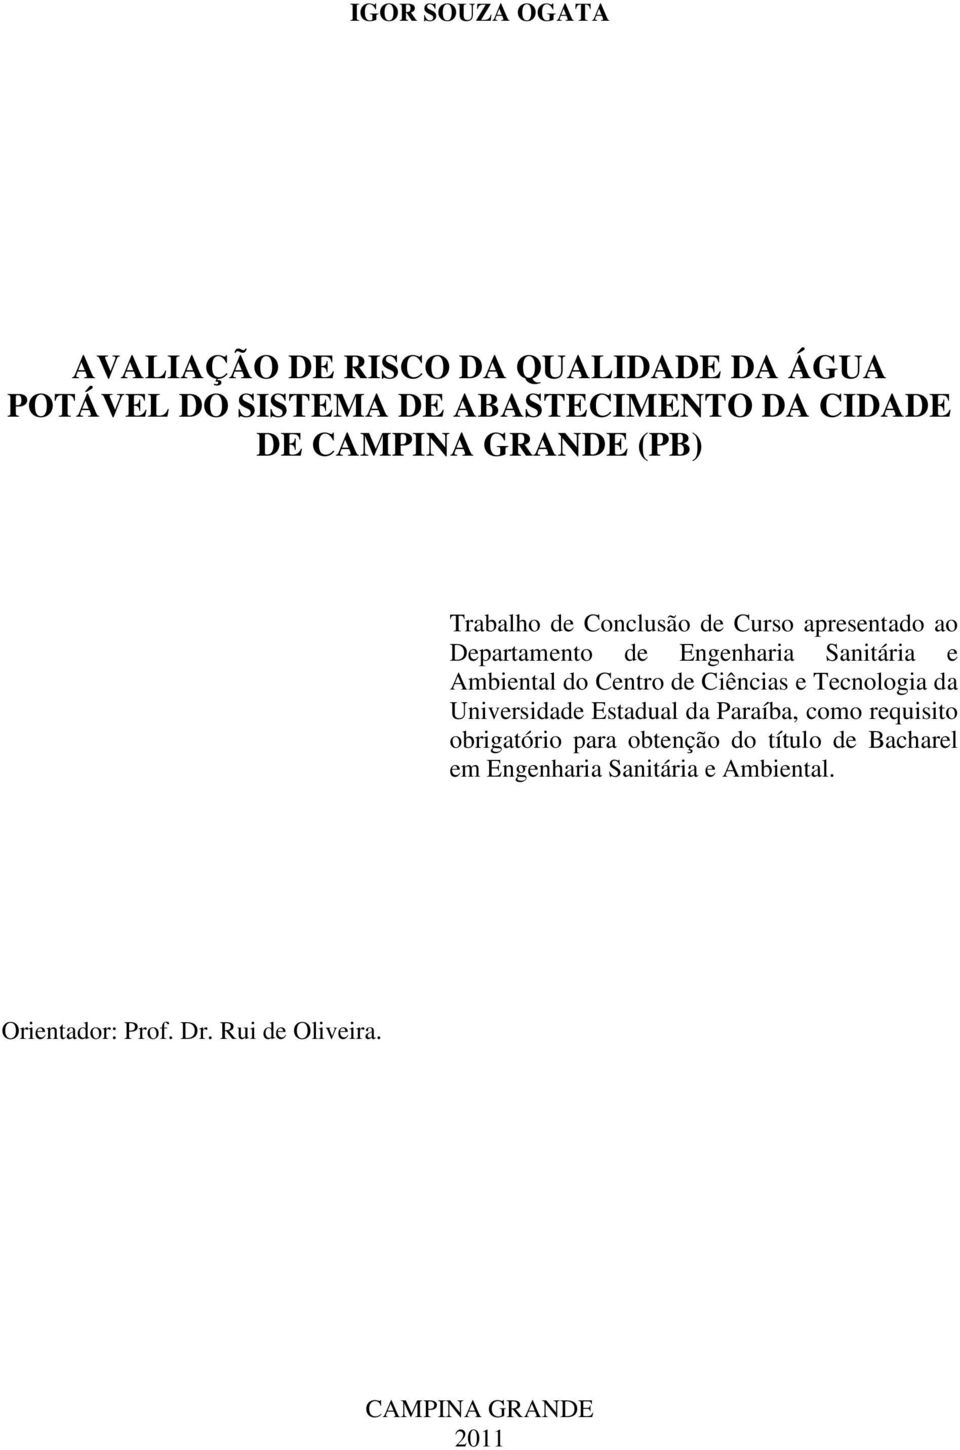 Ambiental do Centro de Ciências e Tecnologia da Universidade Estadual da Paraíba, como requisito obrigatório